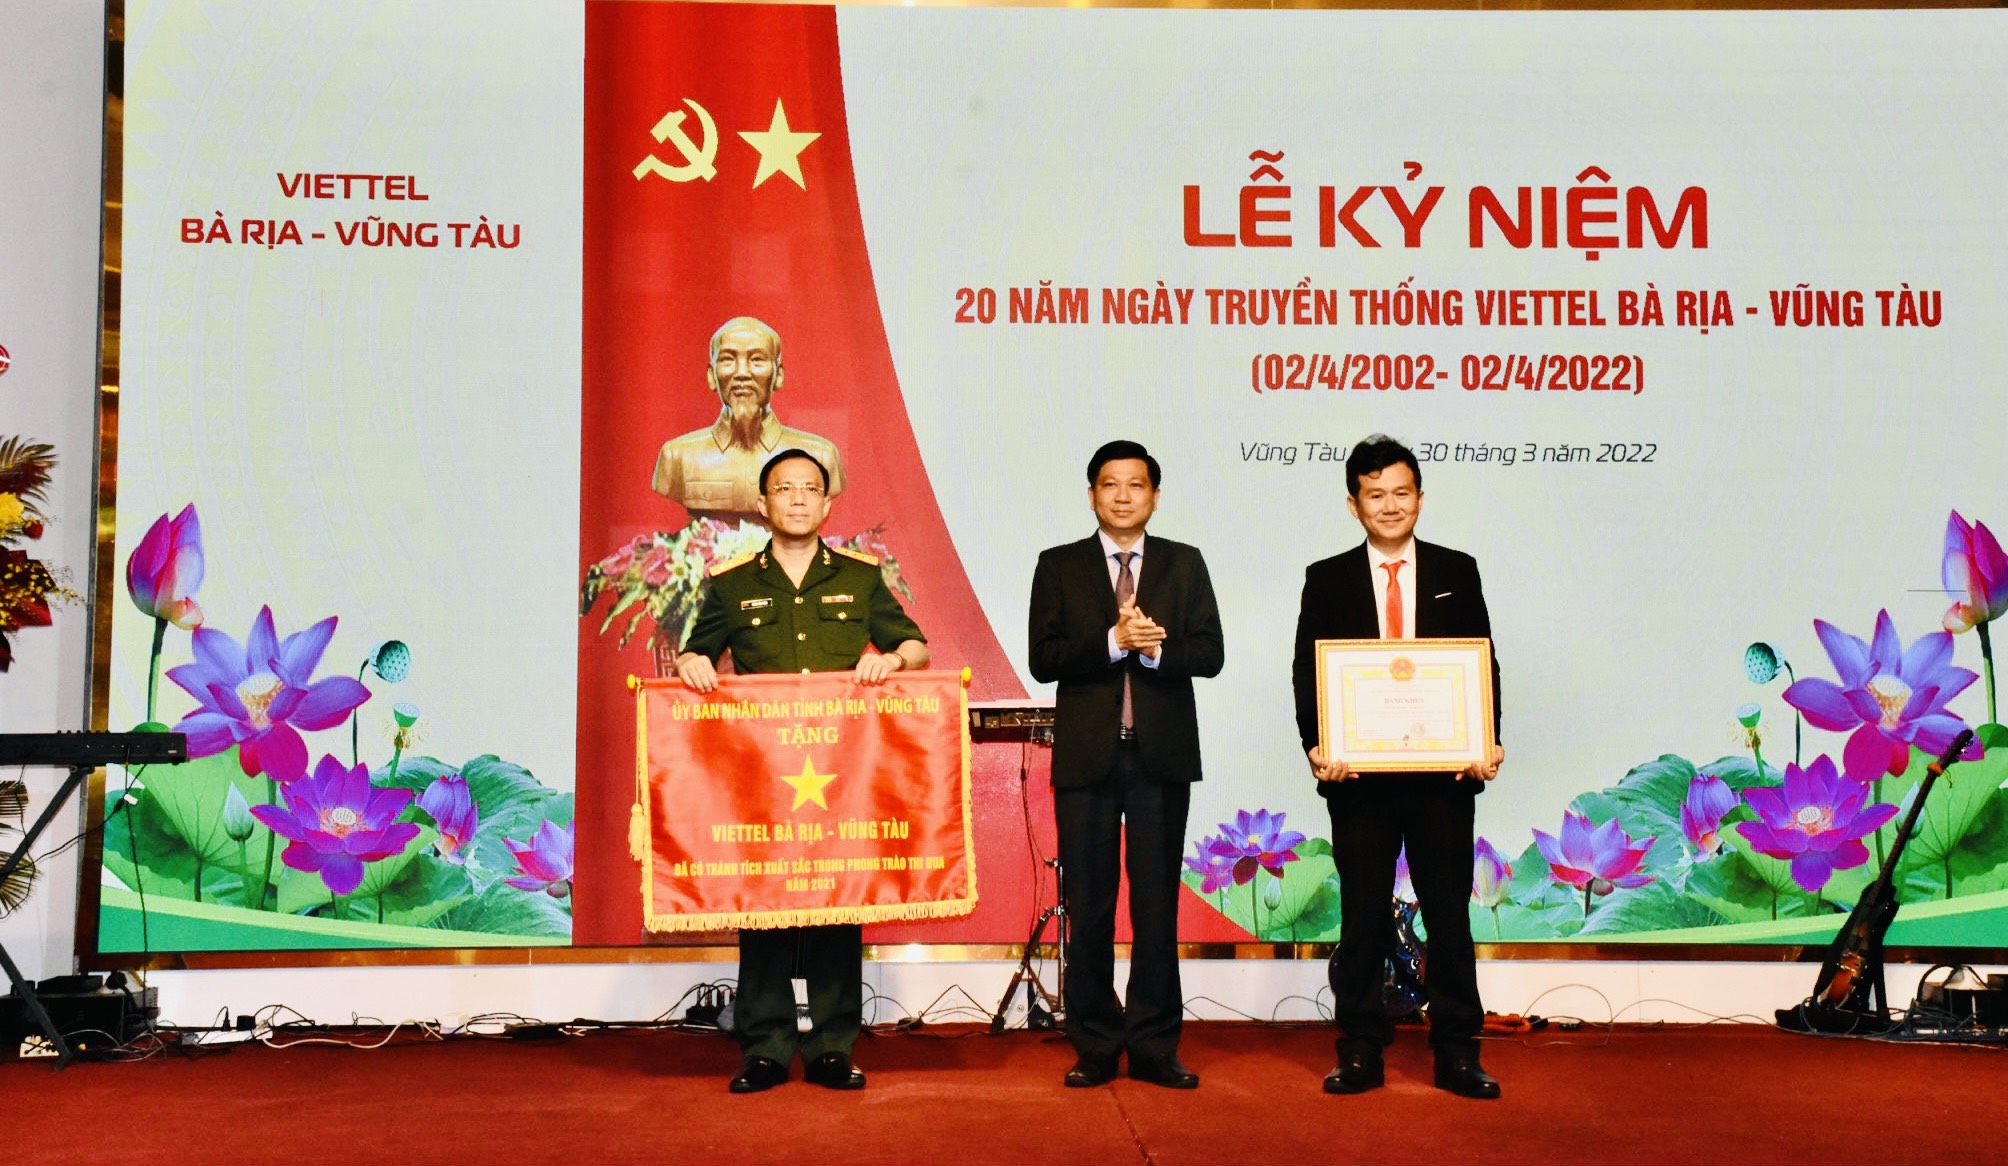 Ông Trần Văn Tuấn, Phó Chủ tịch UBND tỉnh trao tặng cờ thi đua cho lãnh đạo Viettel BR-VT tại lễ kỷ niệm 20 năm thành lập Viettel BR-VT..